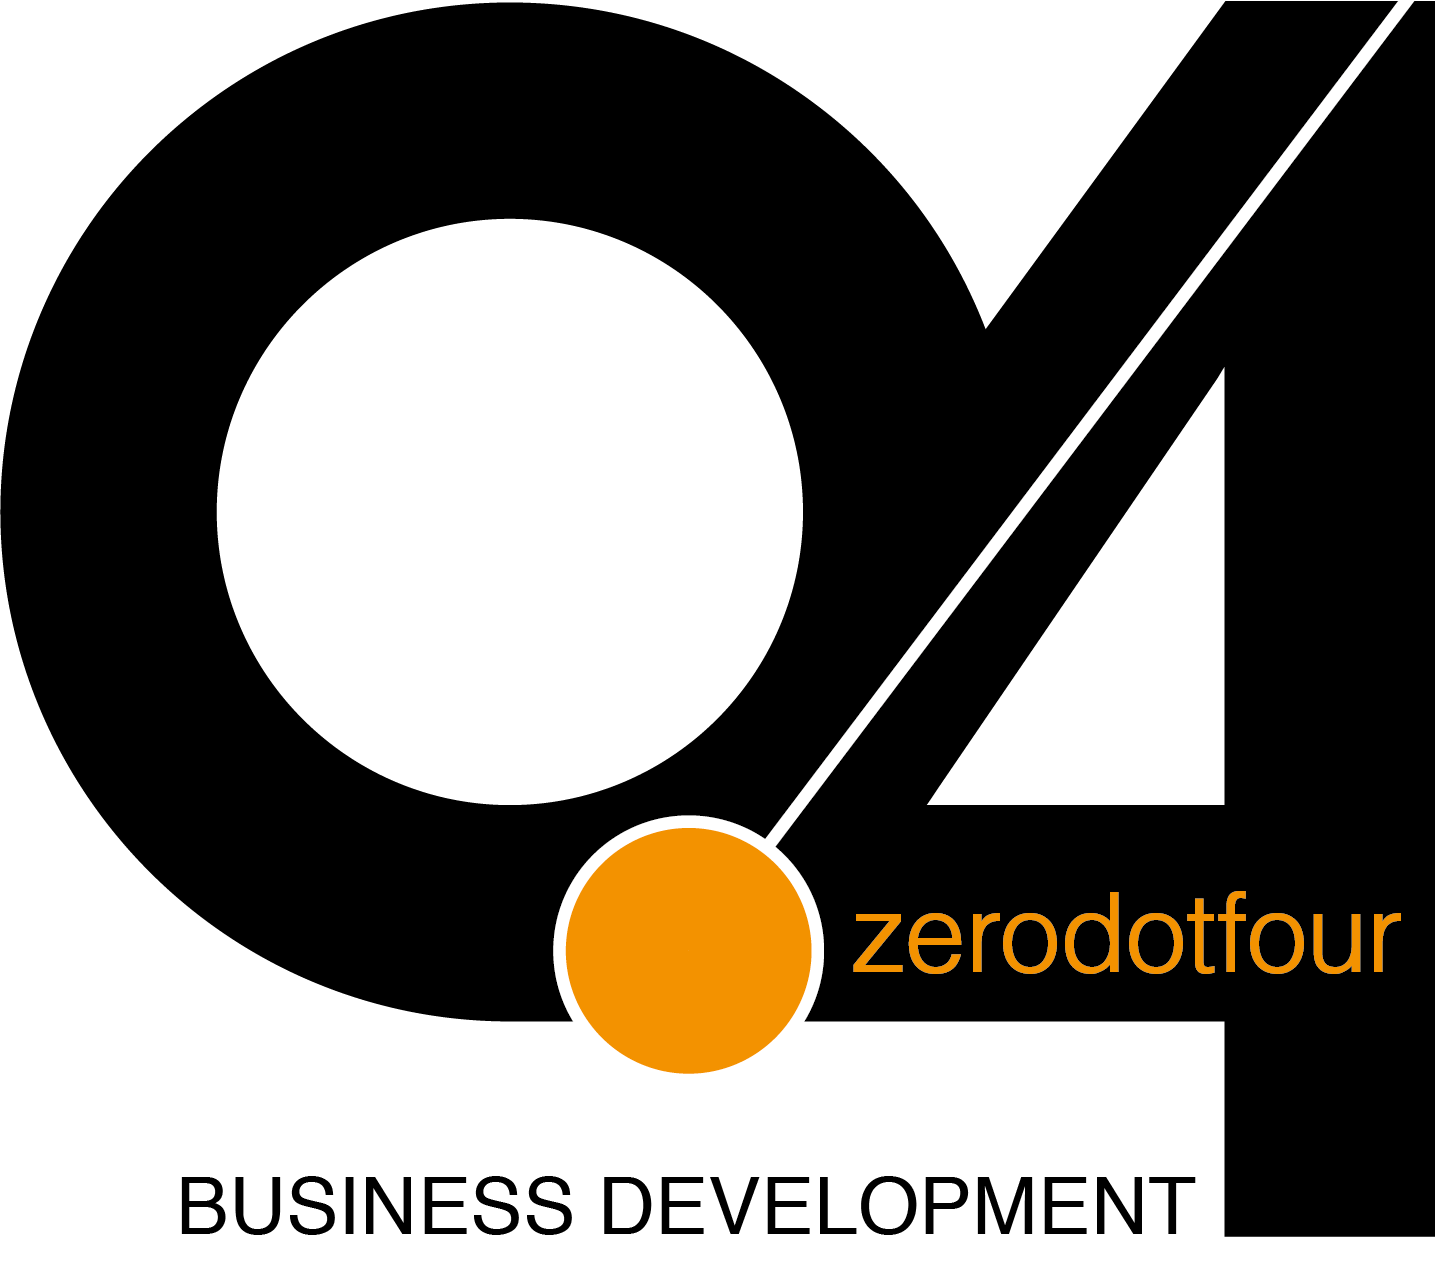 ZeroDotFour